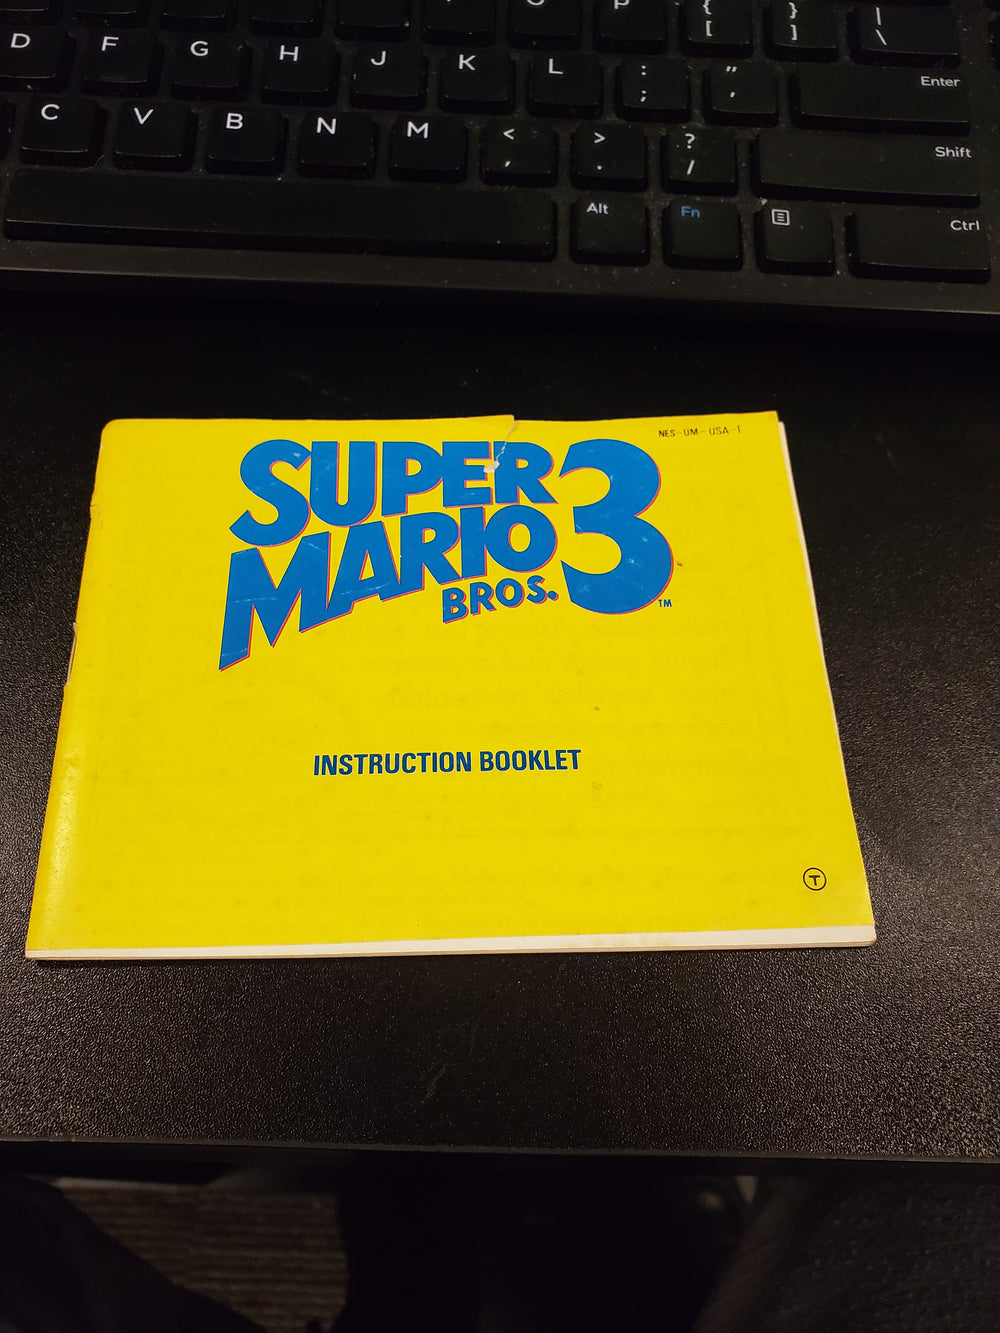 NES Manuals - Super Mario 3